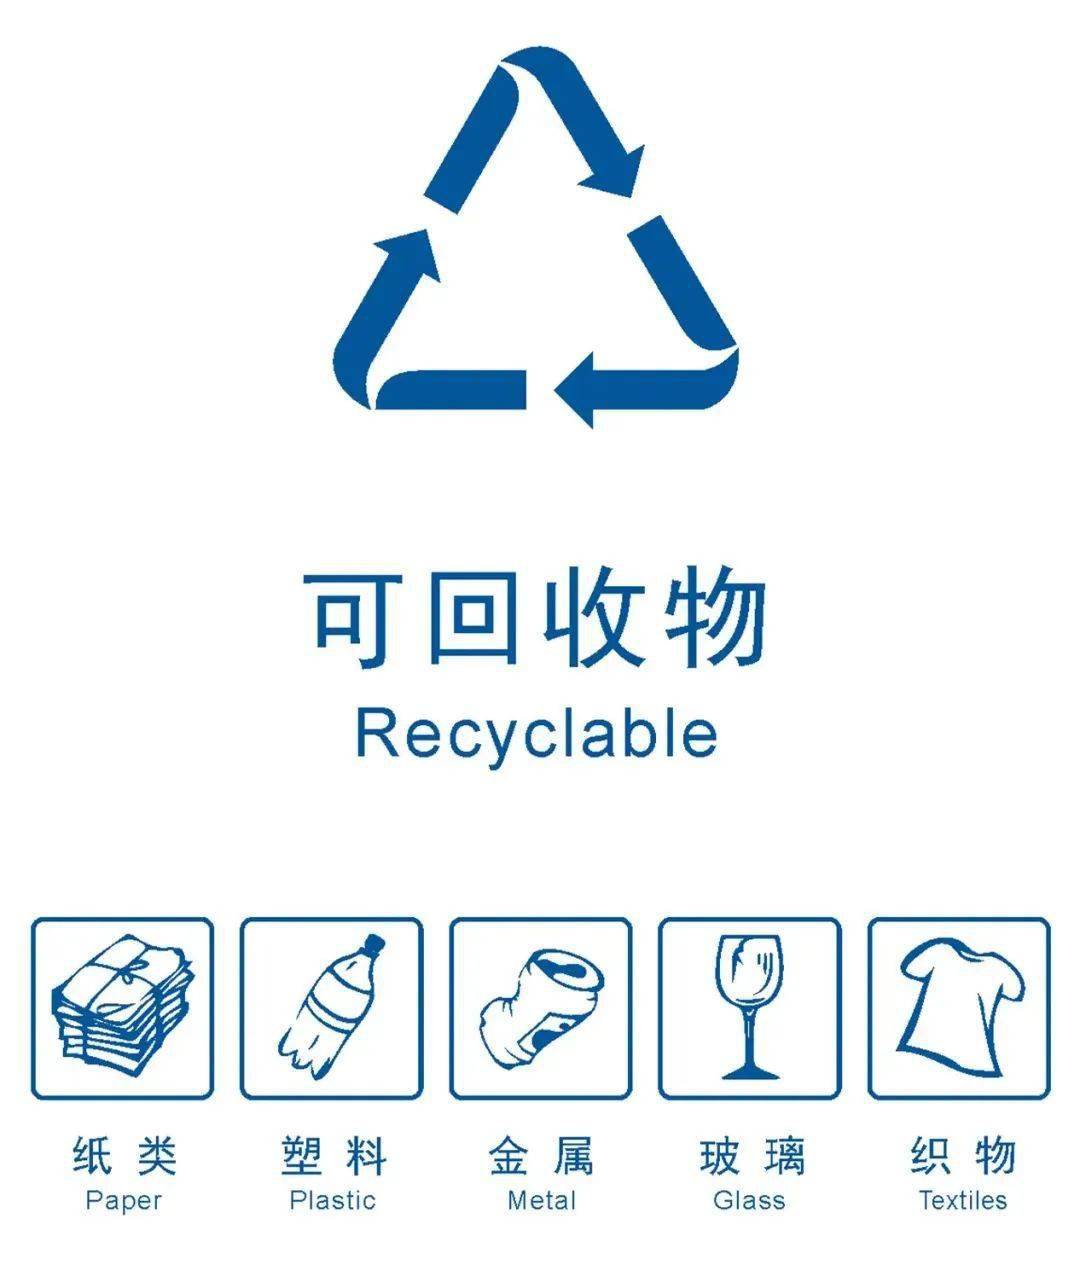 垃圾分类 从我做起  四大分类:可回收物,有害垃圾,厨余垃圾和其他